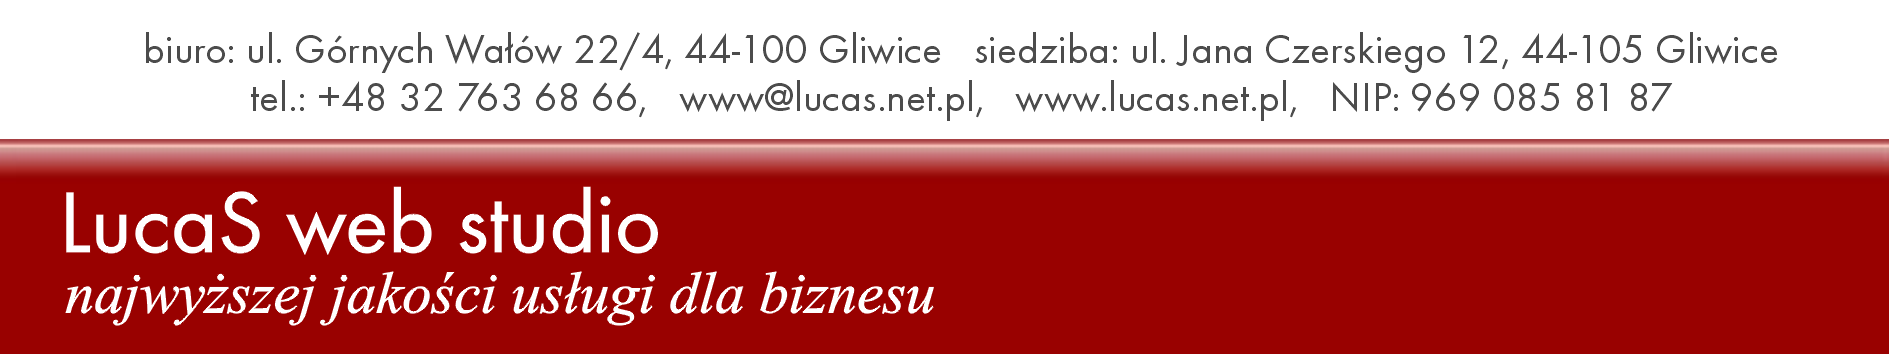 Gliwice 1.04.2008 r. Regulamin świadczenia usług reklamy na tablicach LED firmy LucaS web studio 1. Określenie pojęć: 1.1. LucaS web studio Łukasz A.